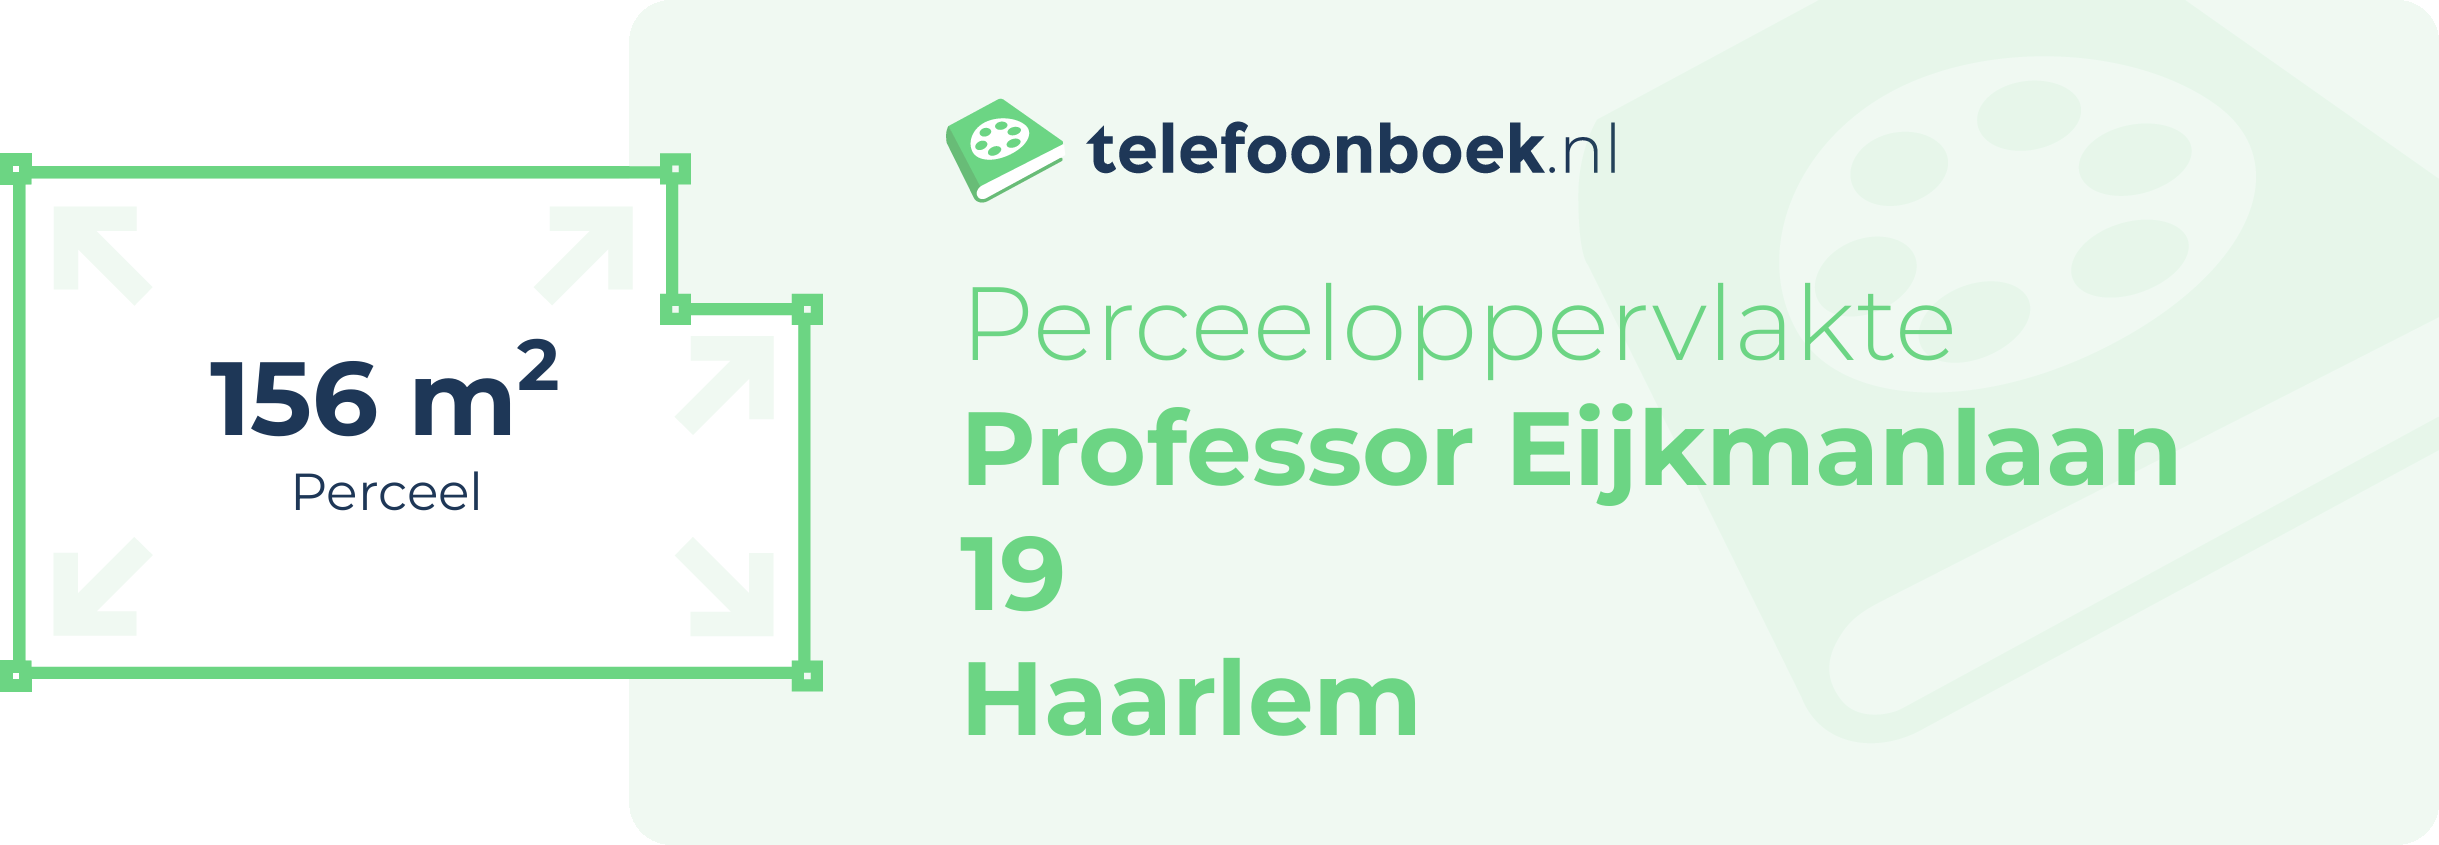 Perceeloppervlakte Professor Eijkmanlaan 19 Haarlem